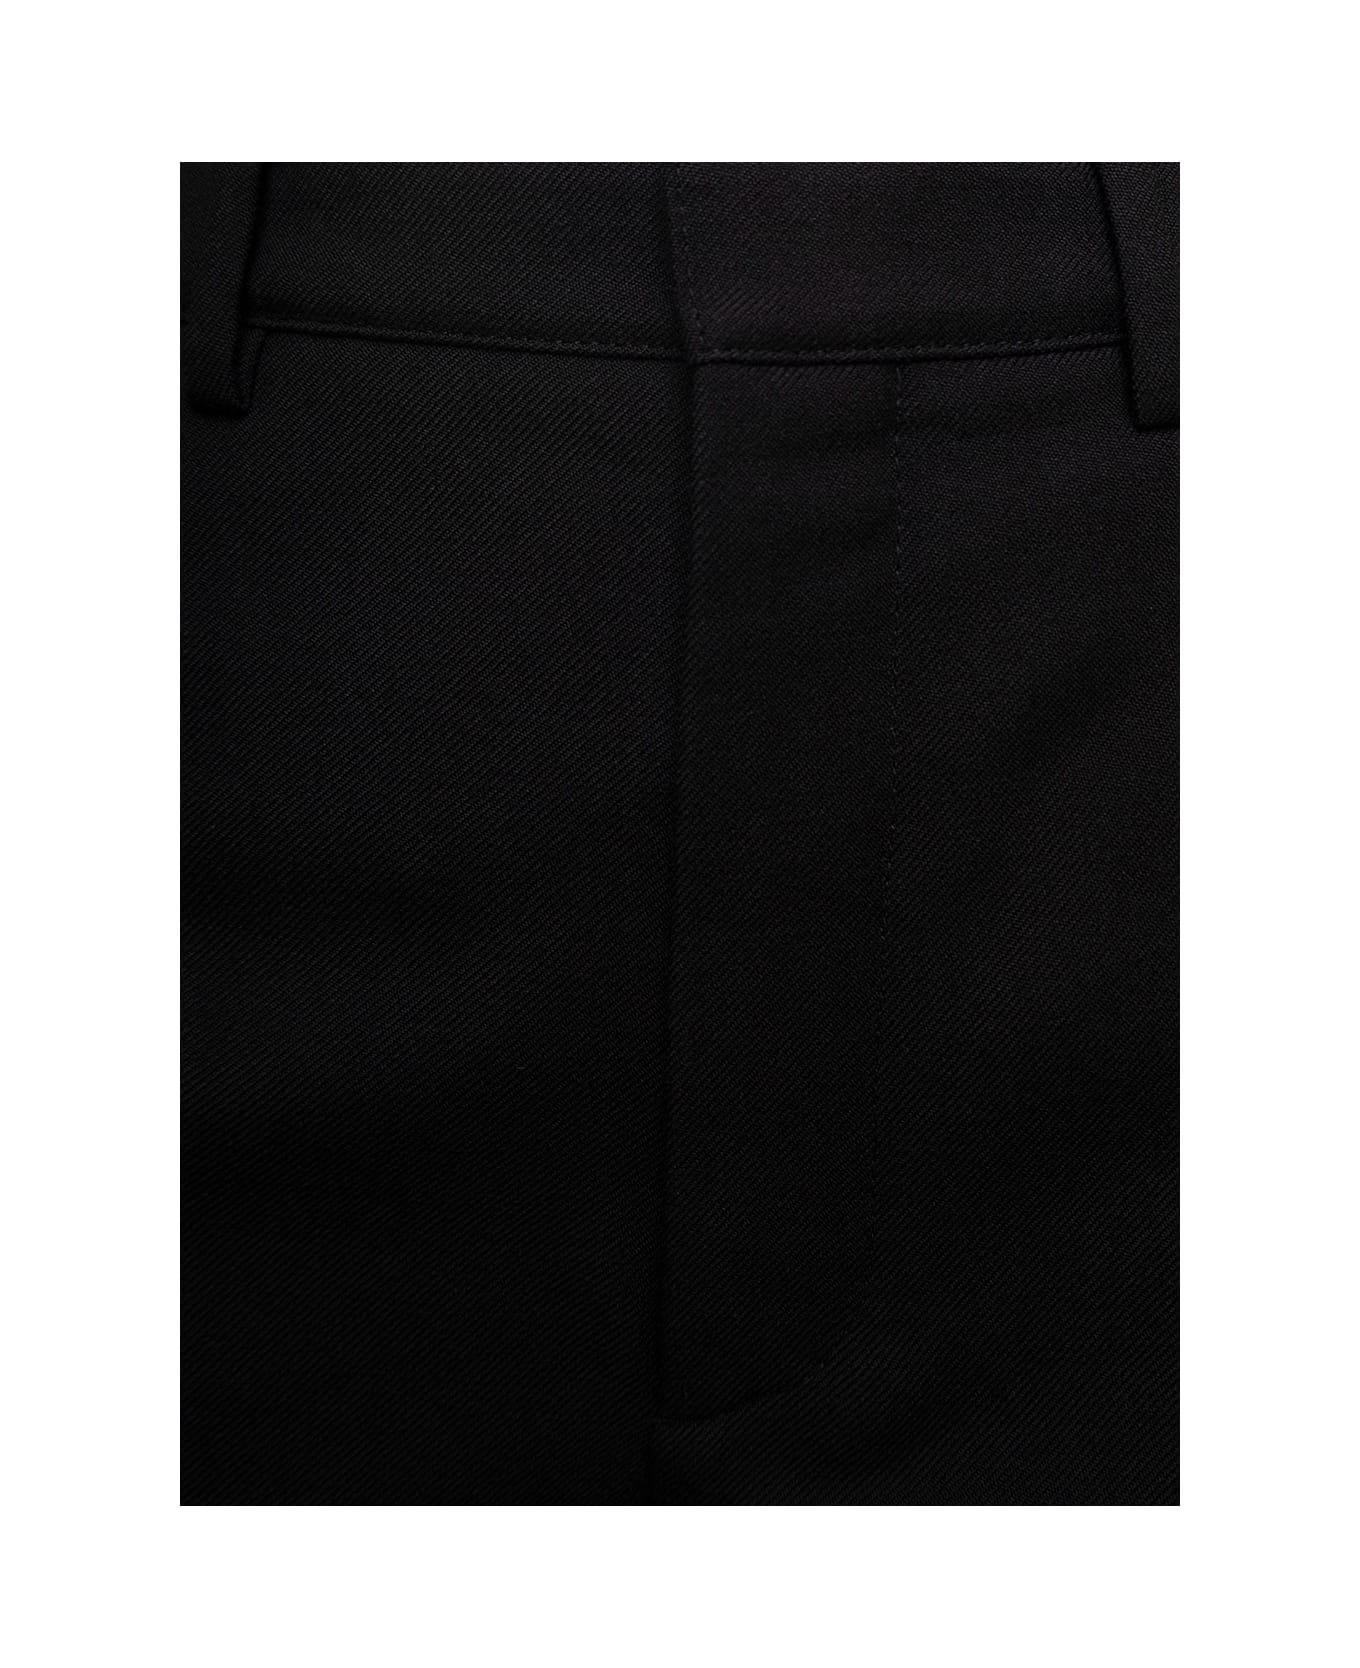 Saint Laurent Black Slim High Waisted Pants In Wool Woman - Black